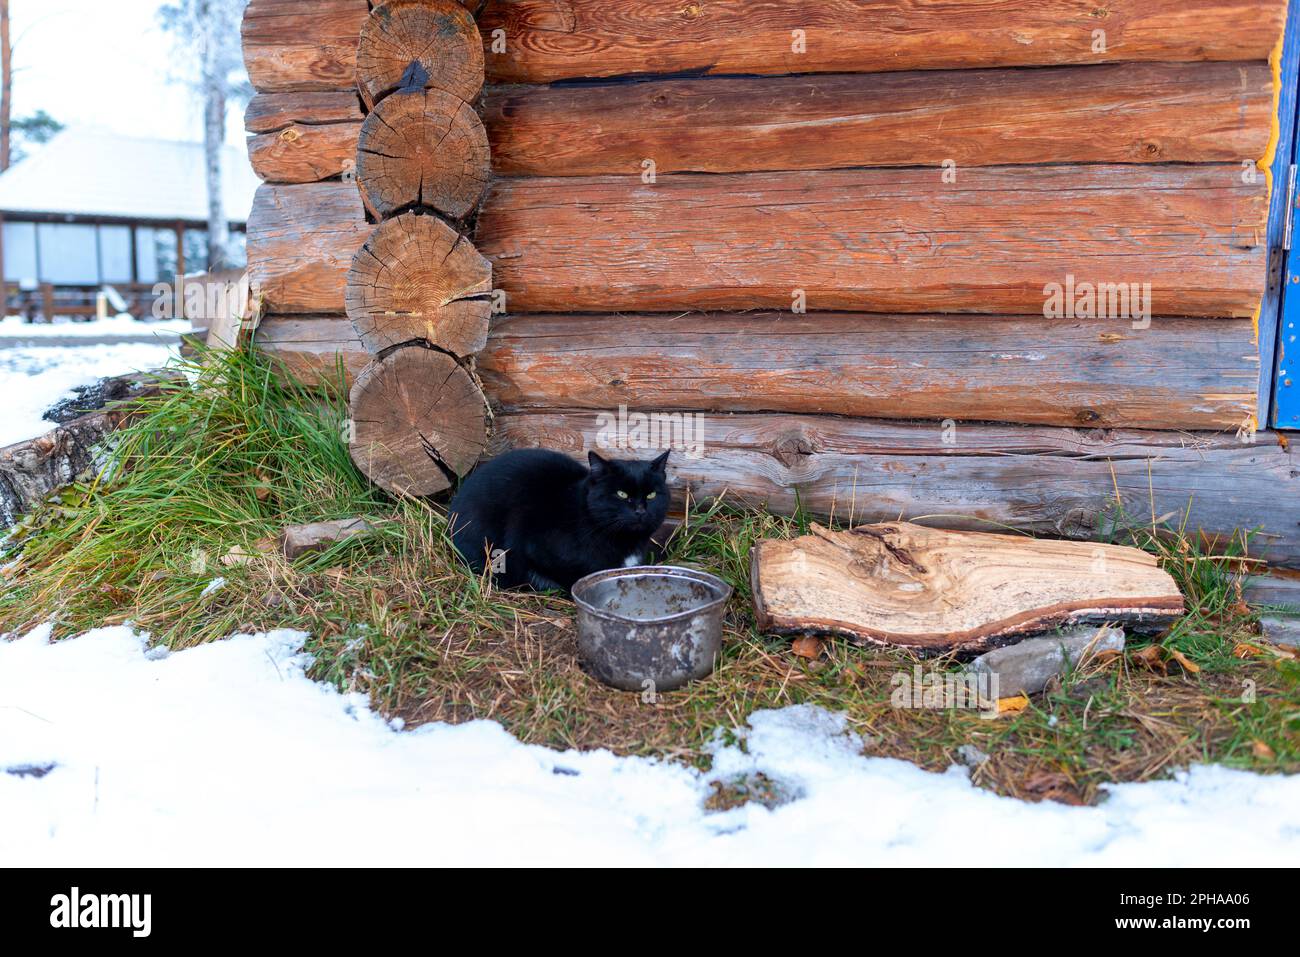 Un chat noir est assis près d'un pot vide contre le mur d'un chalet en bois dans la neige en hiver dans l'Altaï en Sibérie. Banque D'Images